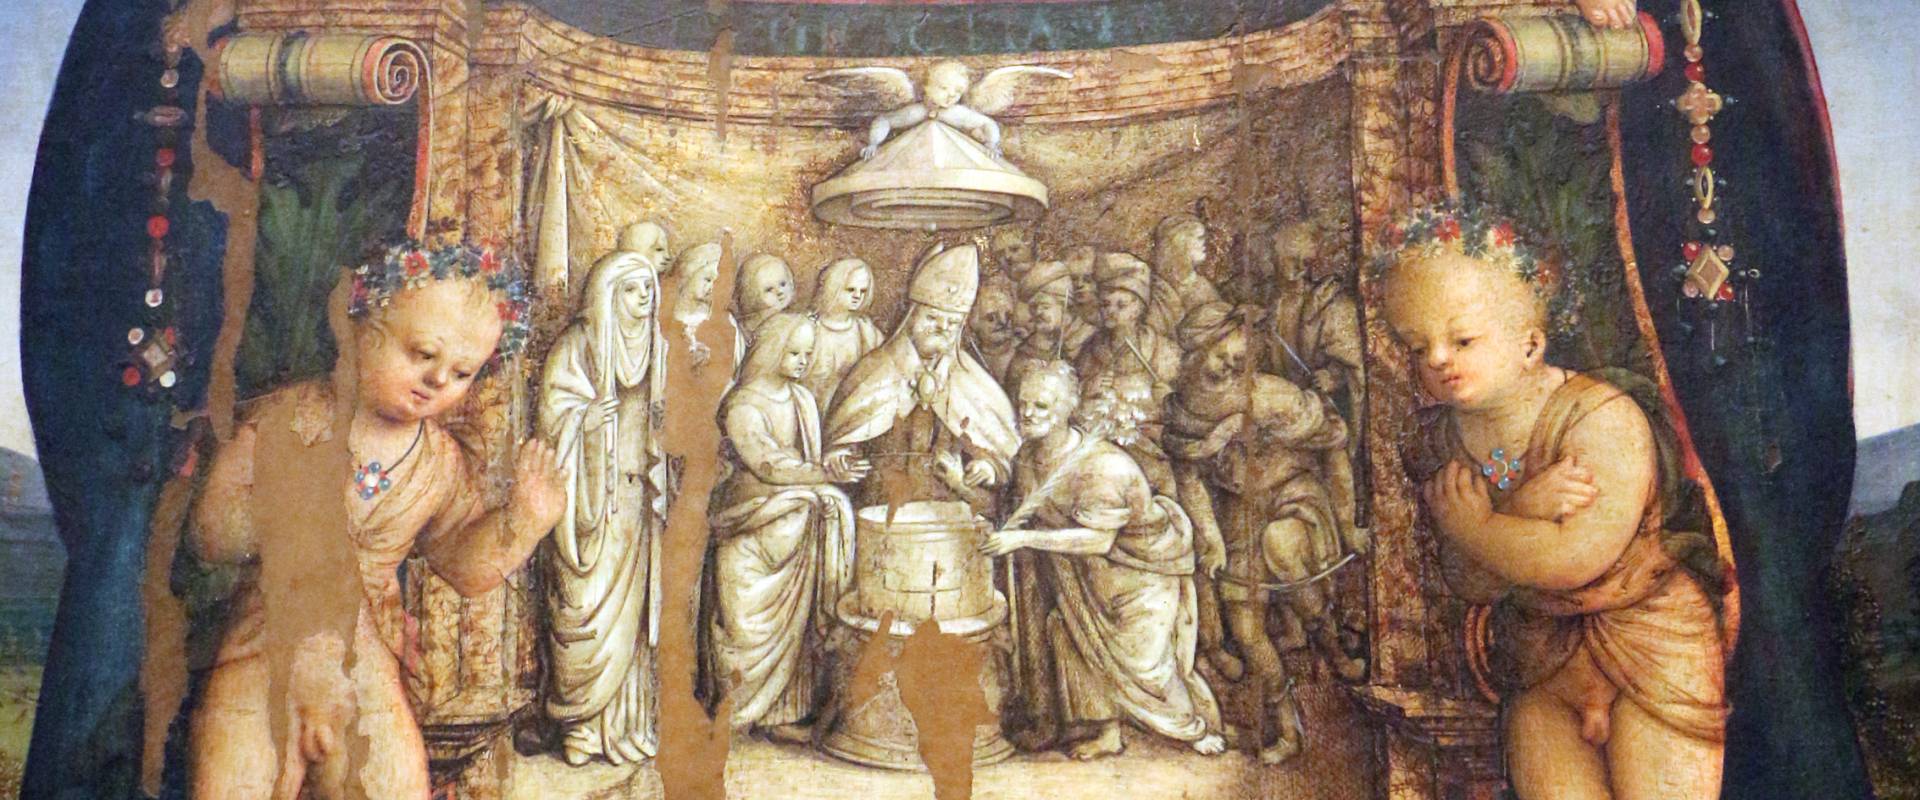 Amico aspertini, madonna in trono, santi e due devoti, 1504-05, dai ss. girolamo ed eustachio, 02,2 photo by Sailko